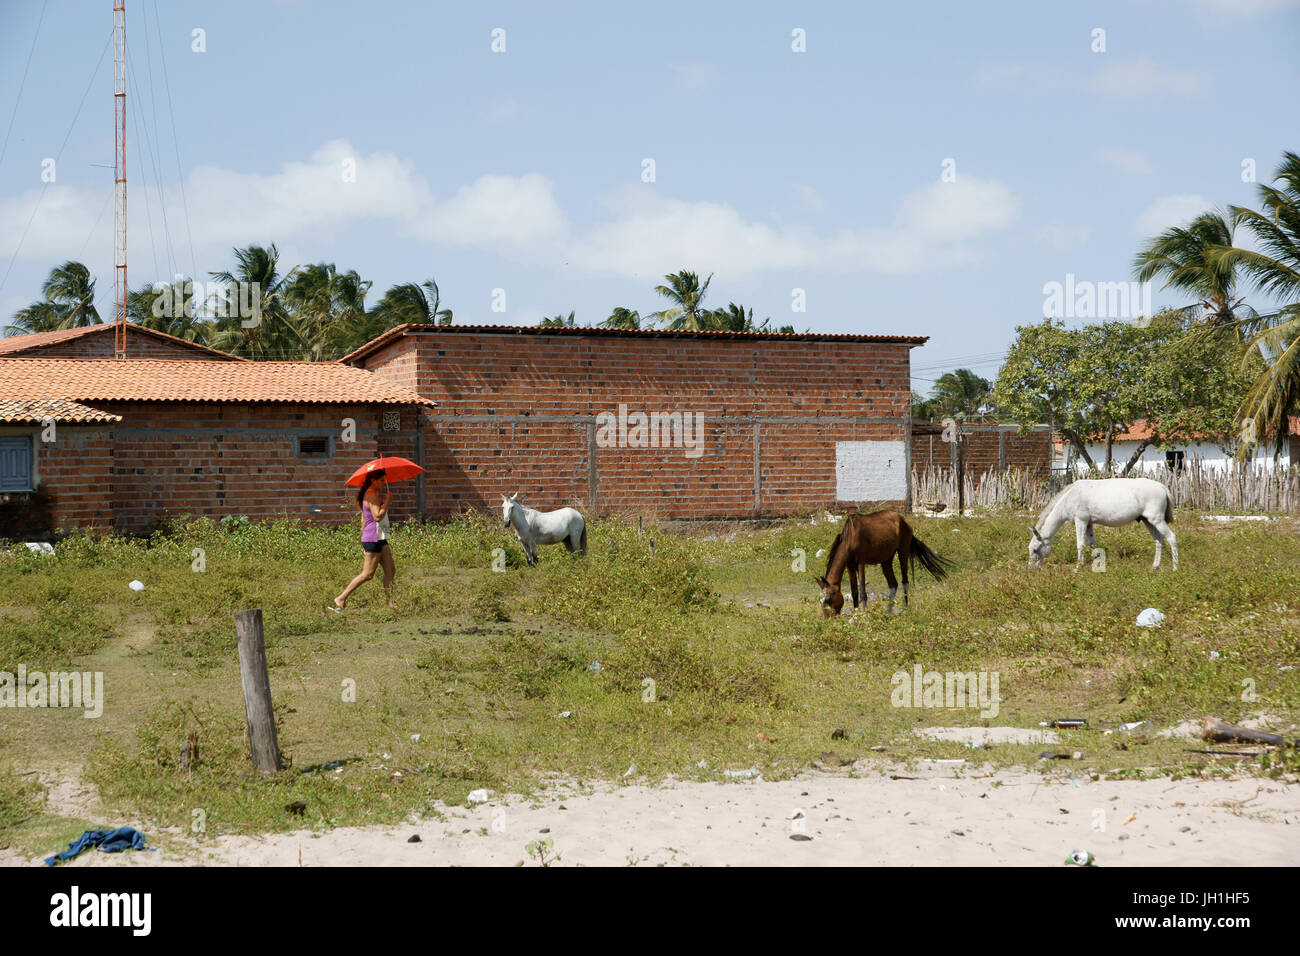 Animal, people, woman, City, Lençois Maranhense, Santo Amaro, São Luis, Maranhão, Brazil Stock Photo